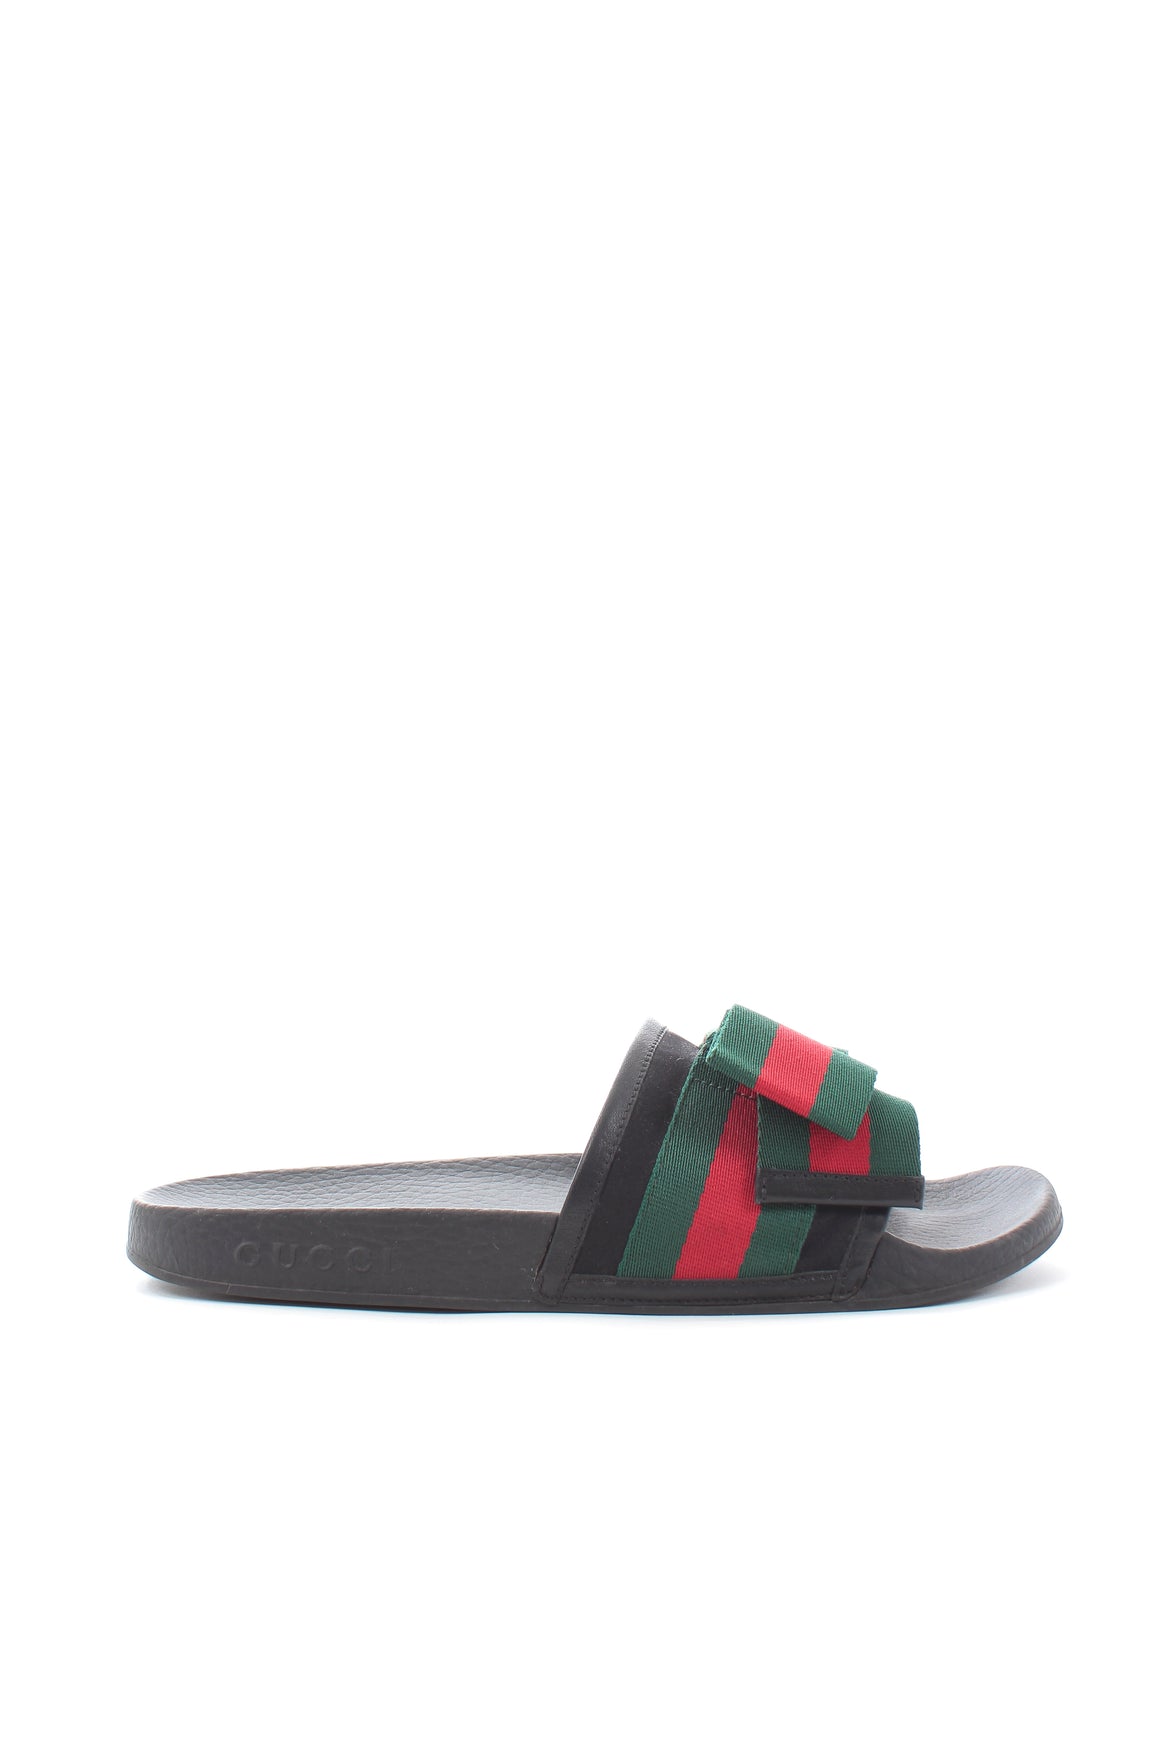 Gucci Pursuit Web Bow Slide Sandals